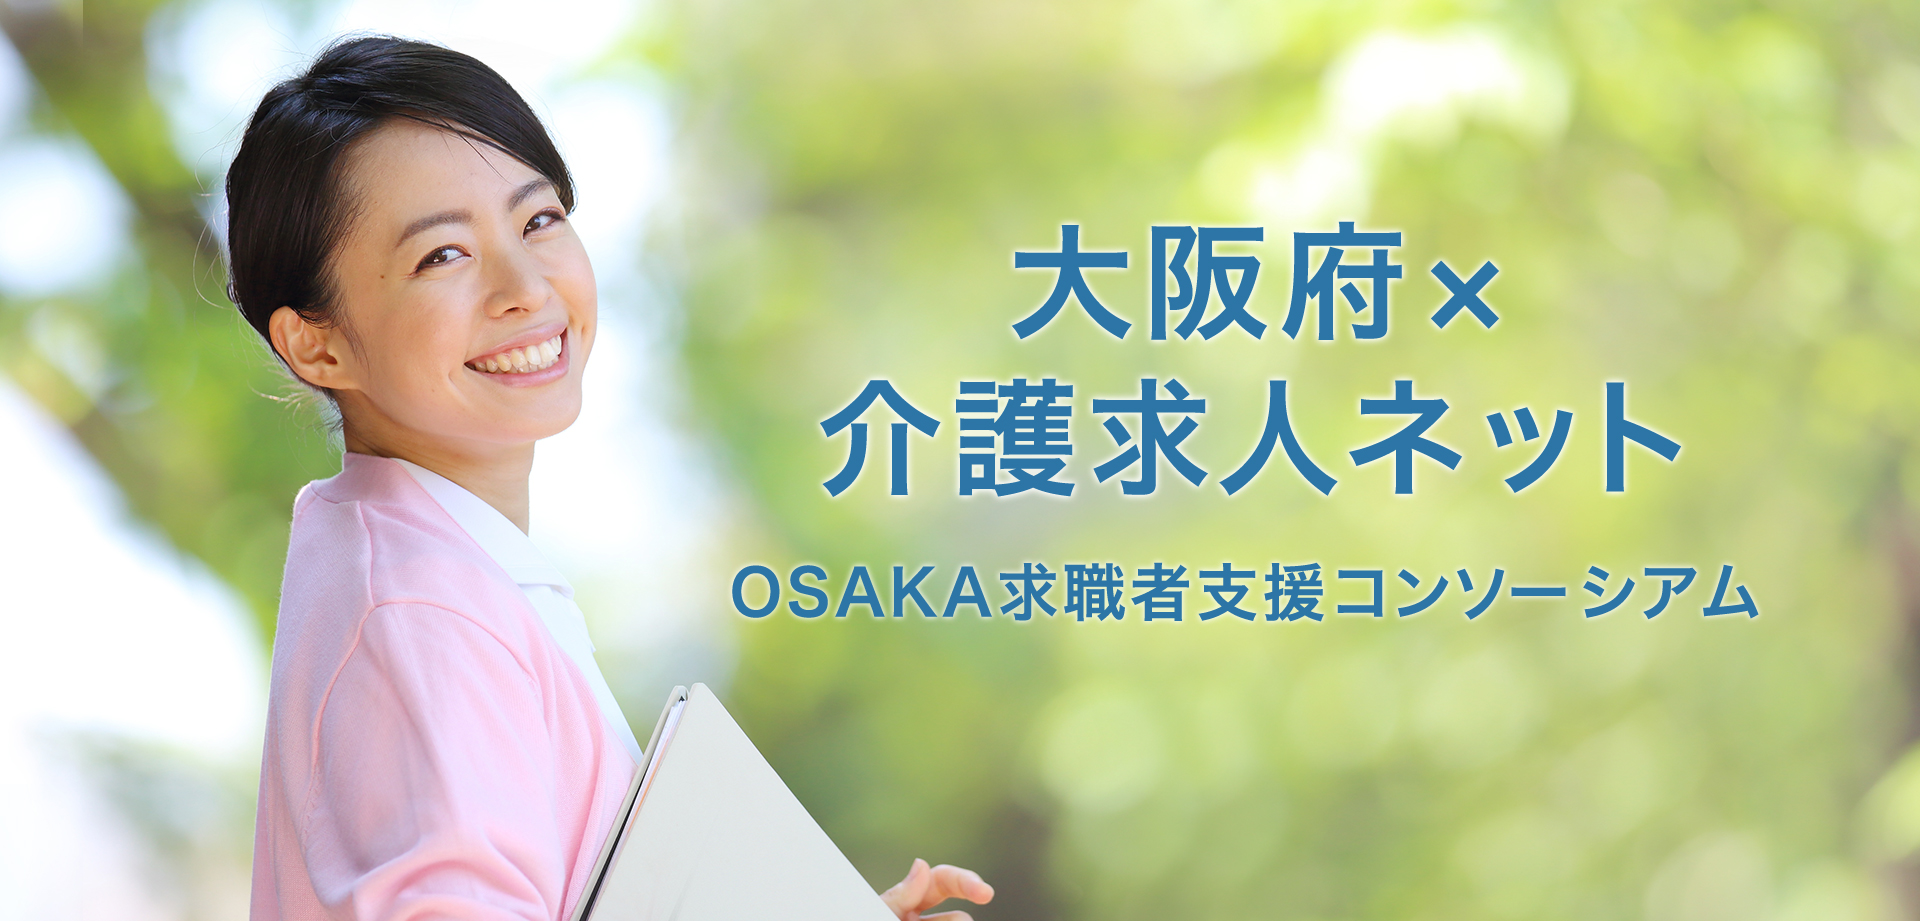 大阪府×介護求人ネットOSAKA求職者支援コンソーシアム